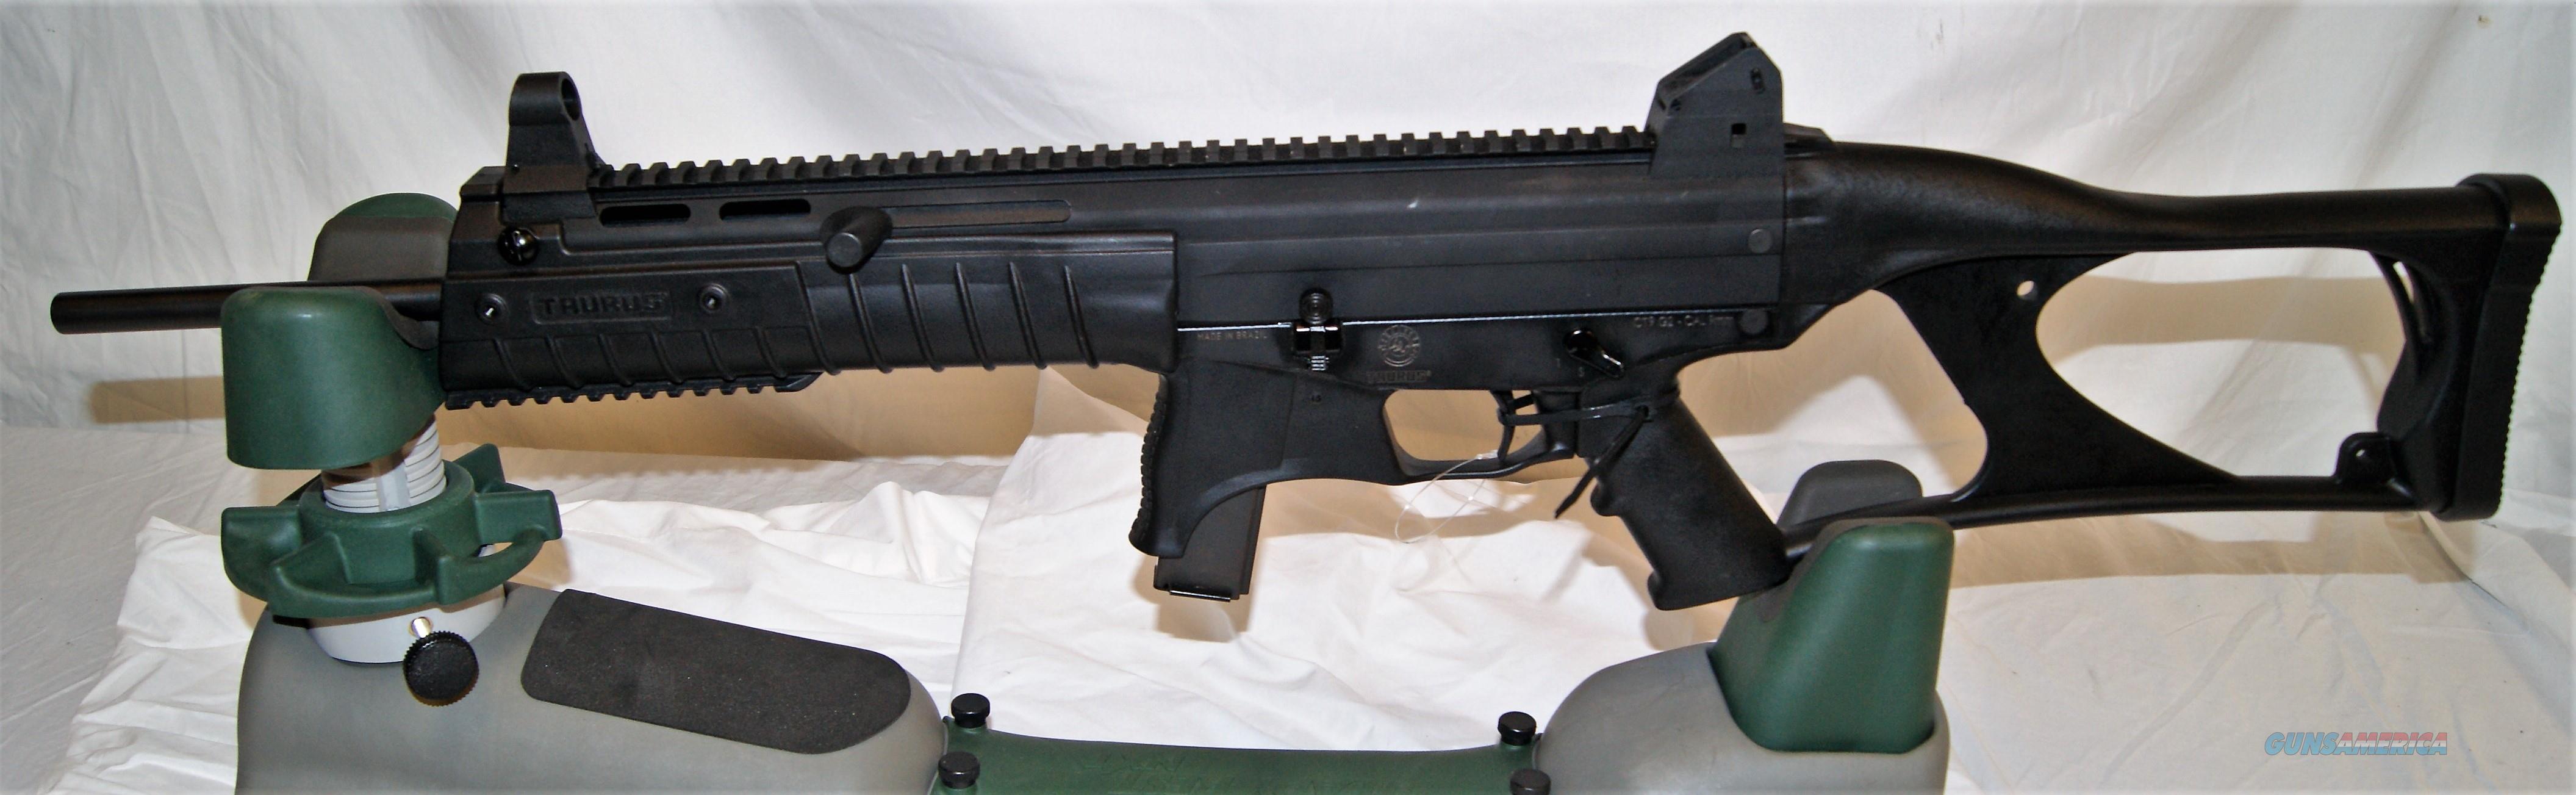 taurus 9mm rifle